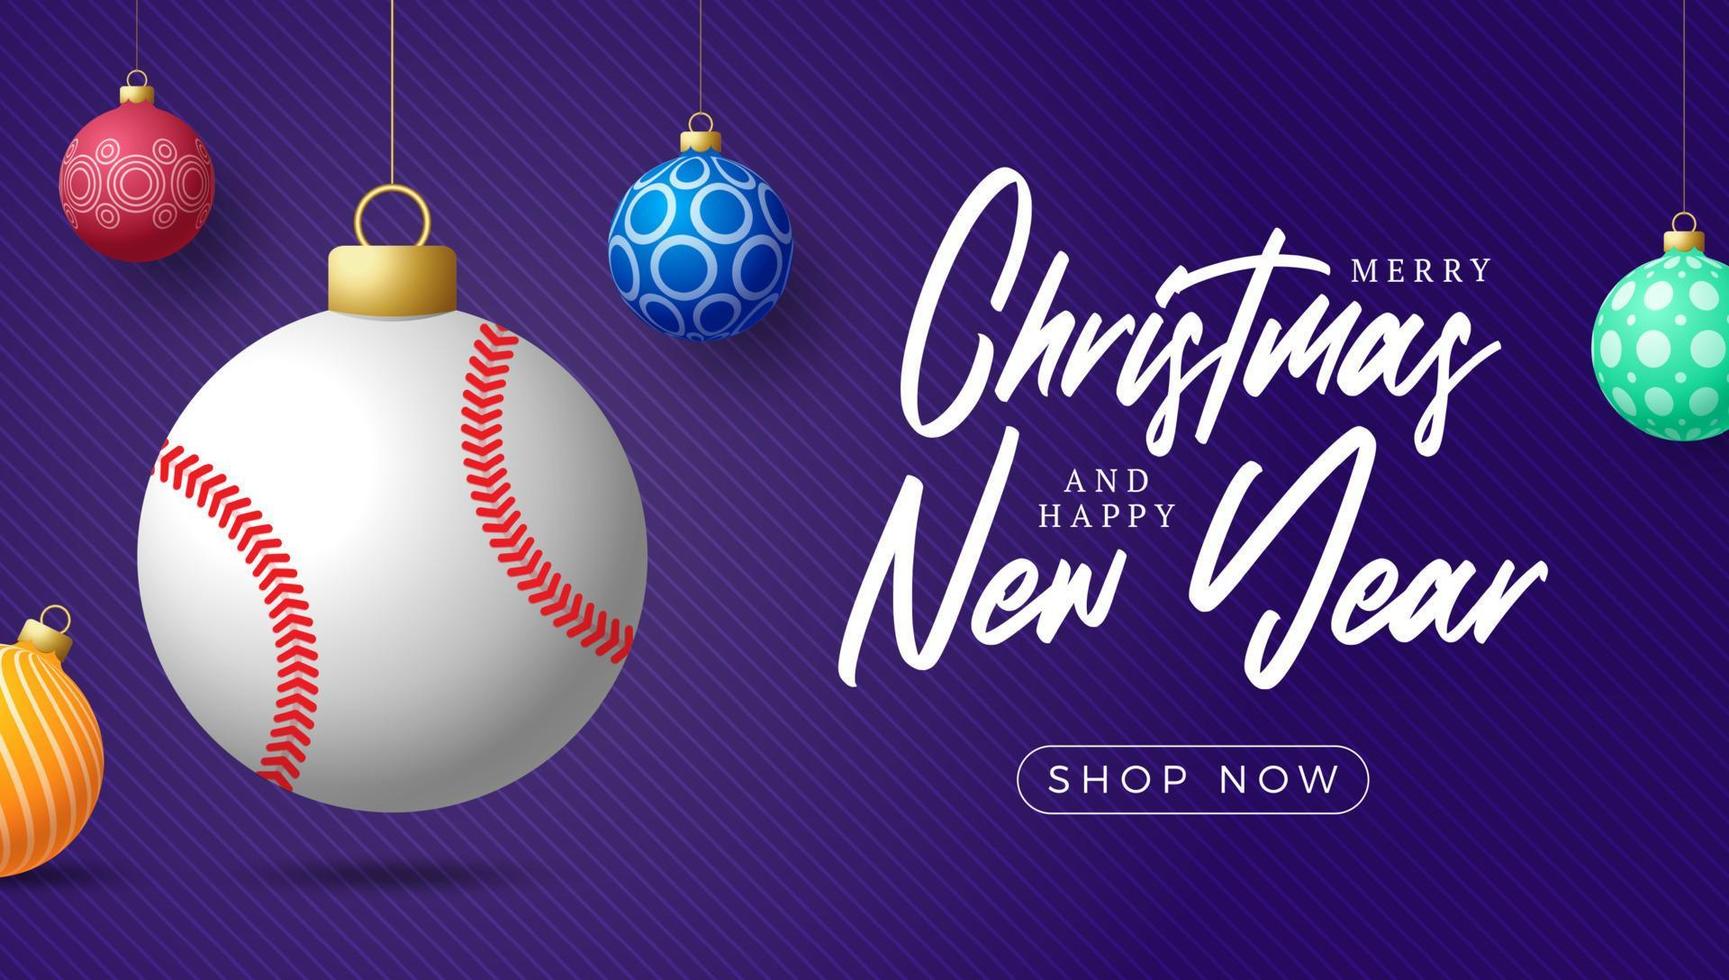 tarjeta de navidad de béisbol. Feliz Navidad tarjeta de felicitación deportiva. colgar de una pelota de béisbol de hilo como una bola de Navidad y adornos de colores sobre fondo púrpura horizontal. Ilustración de vector de deporte.